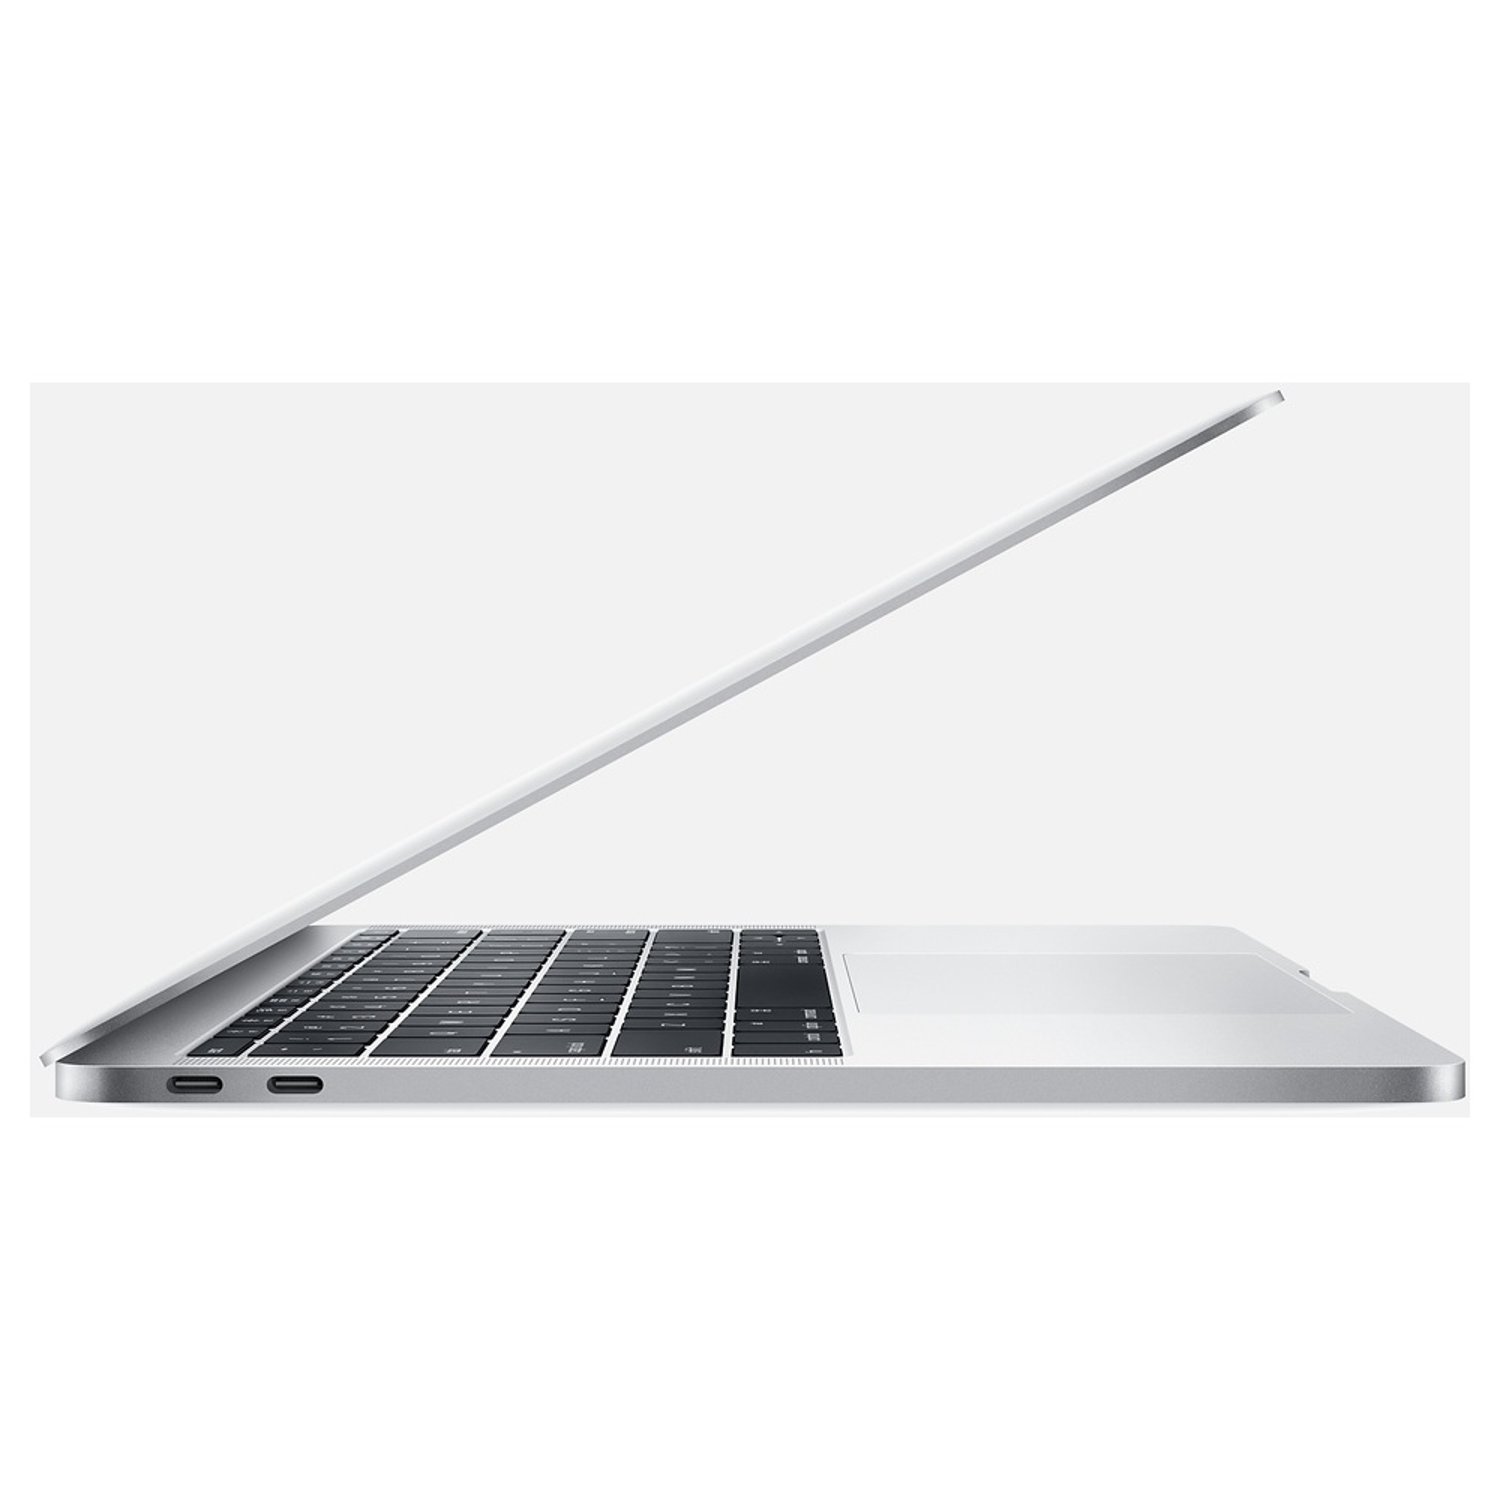 MacBook Pro 13 2017 Core i7 2.5GHz 16GB 128GB Silverr 2